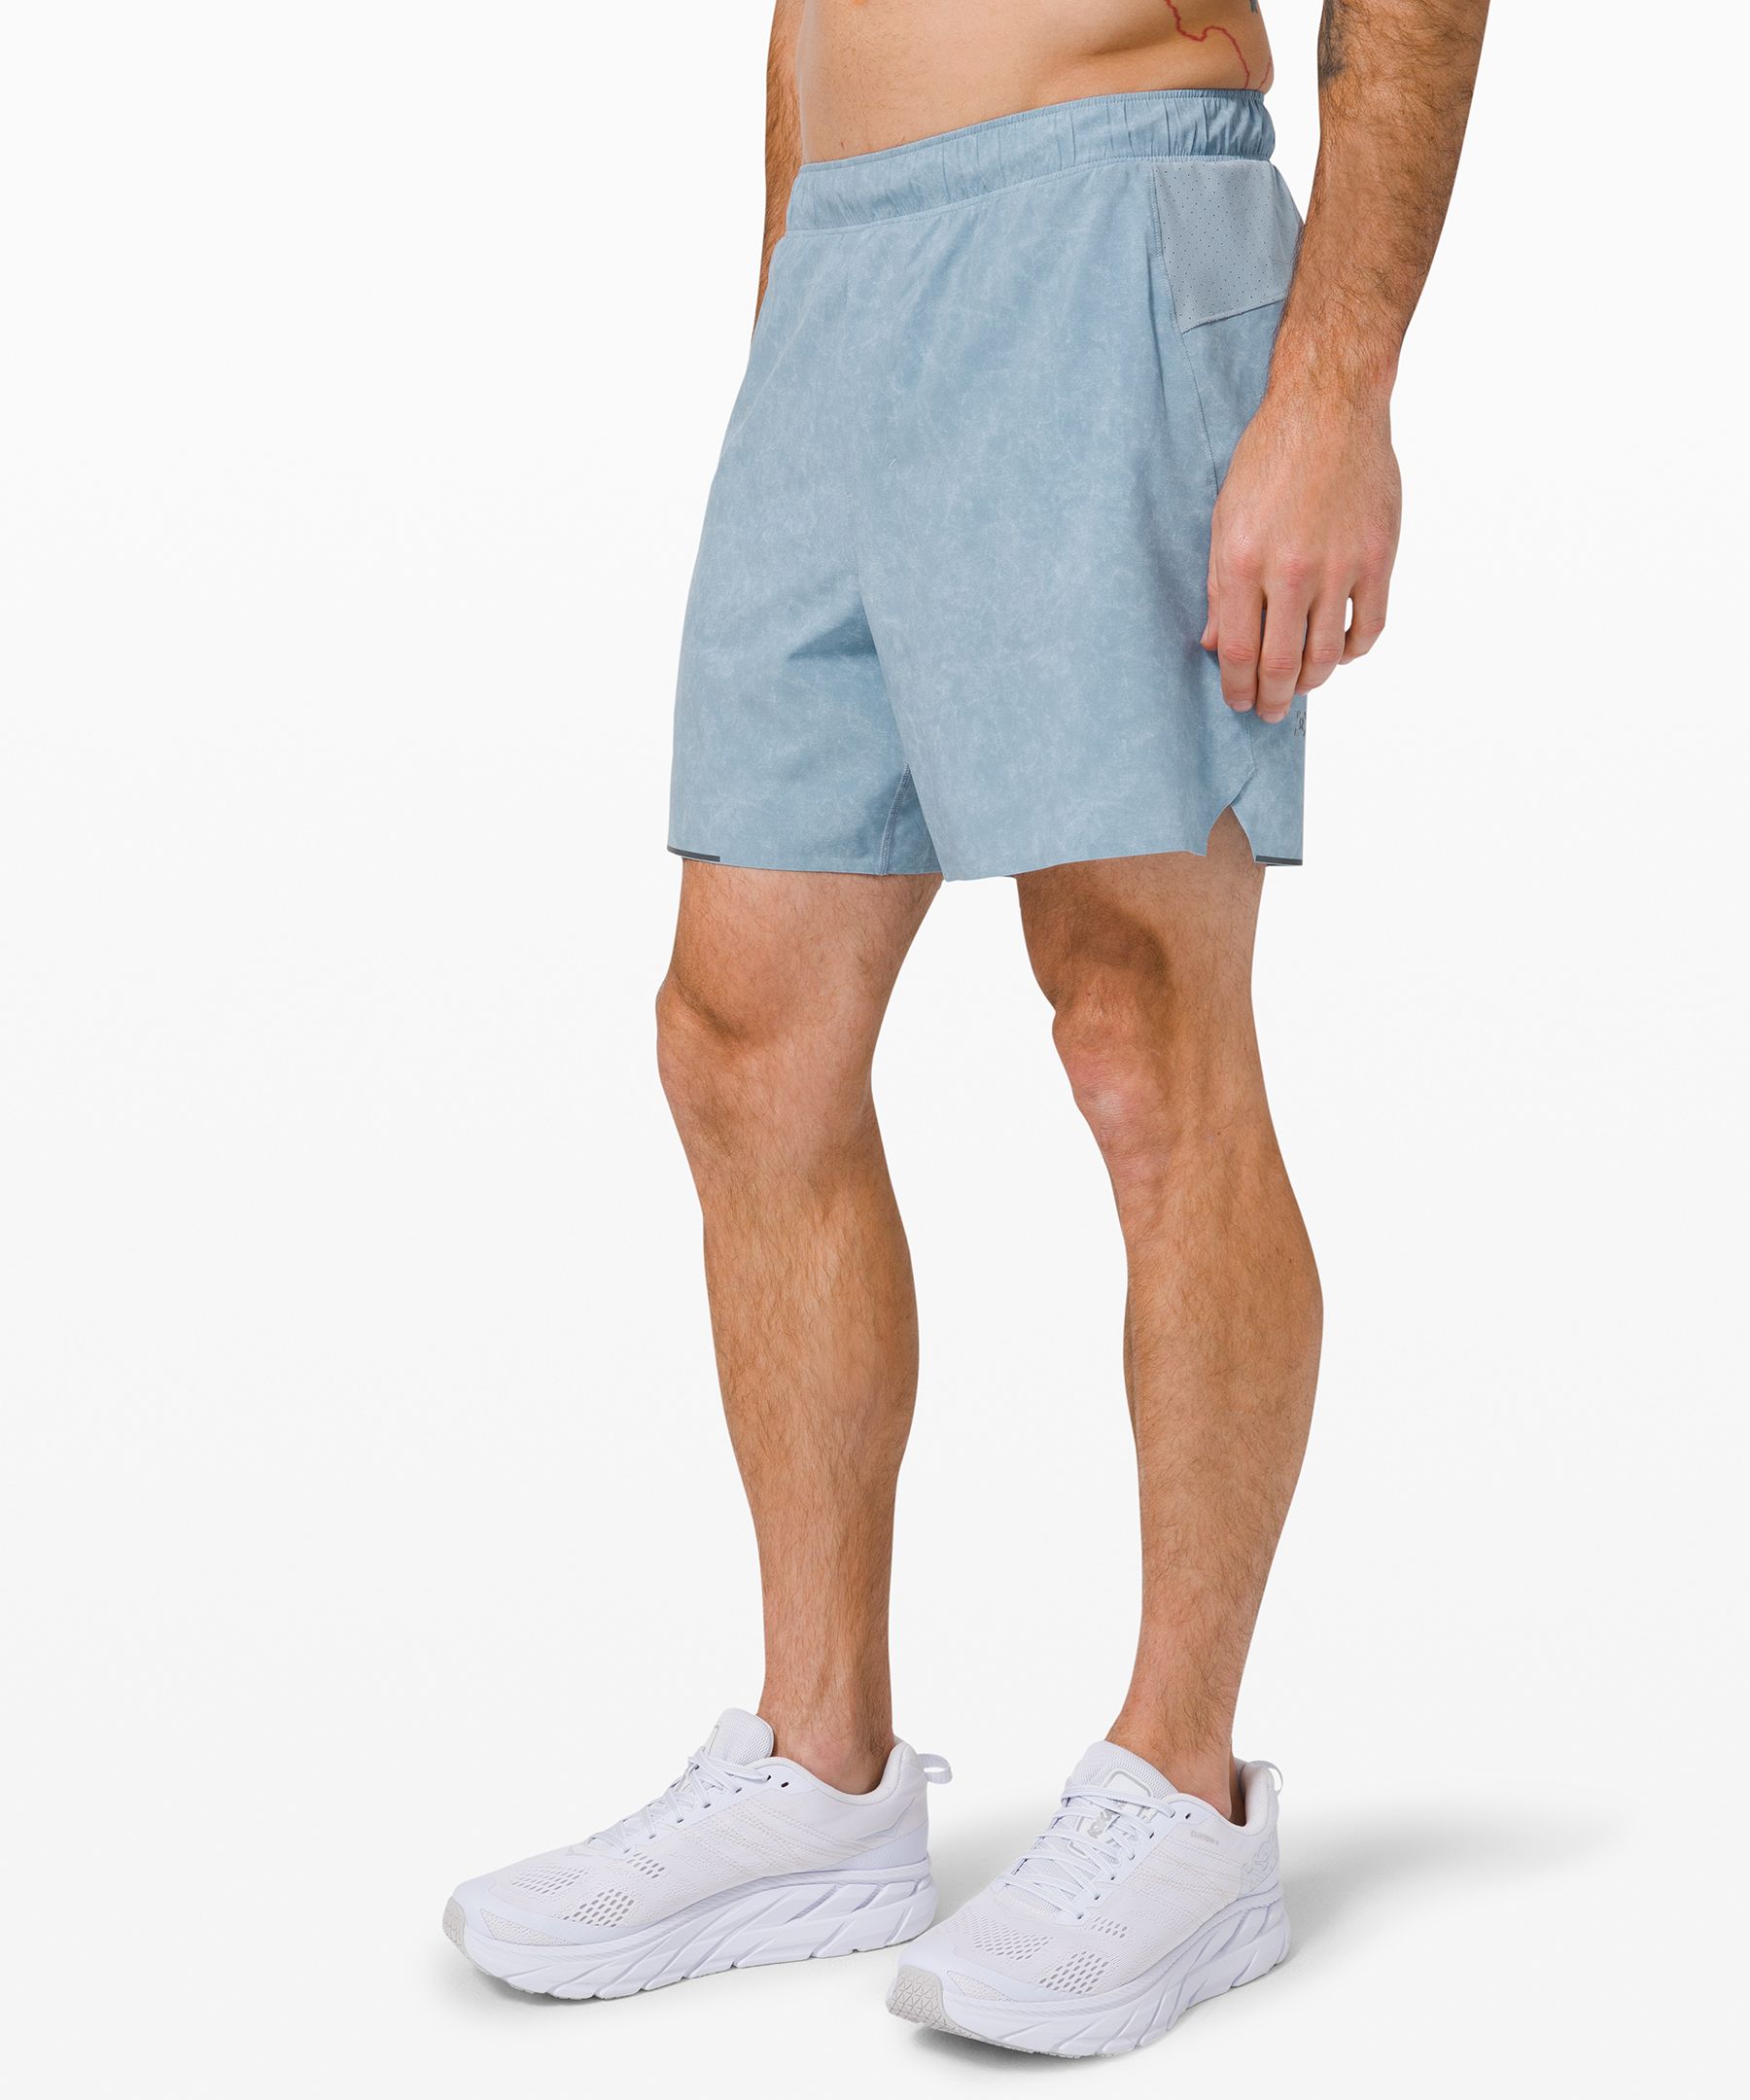 lululemon shorts styles